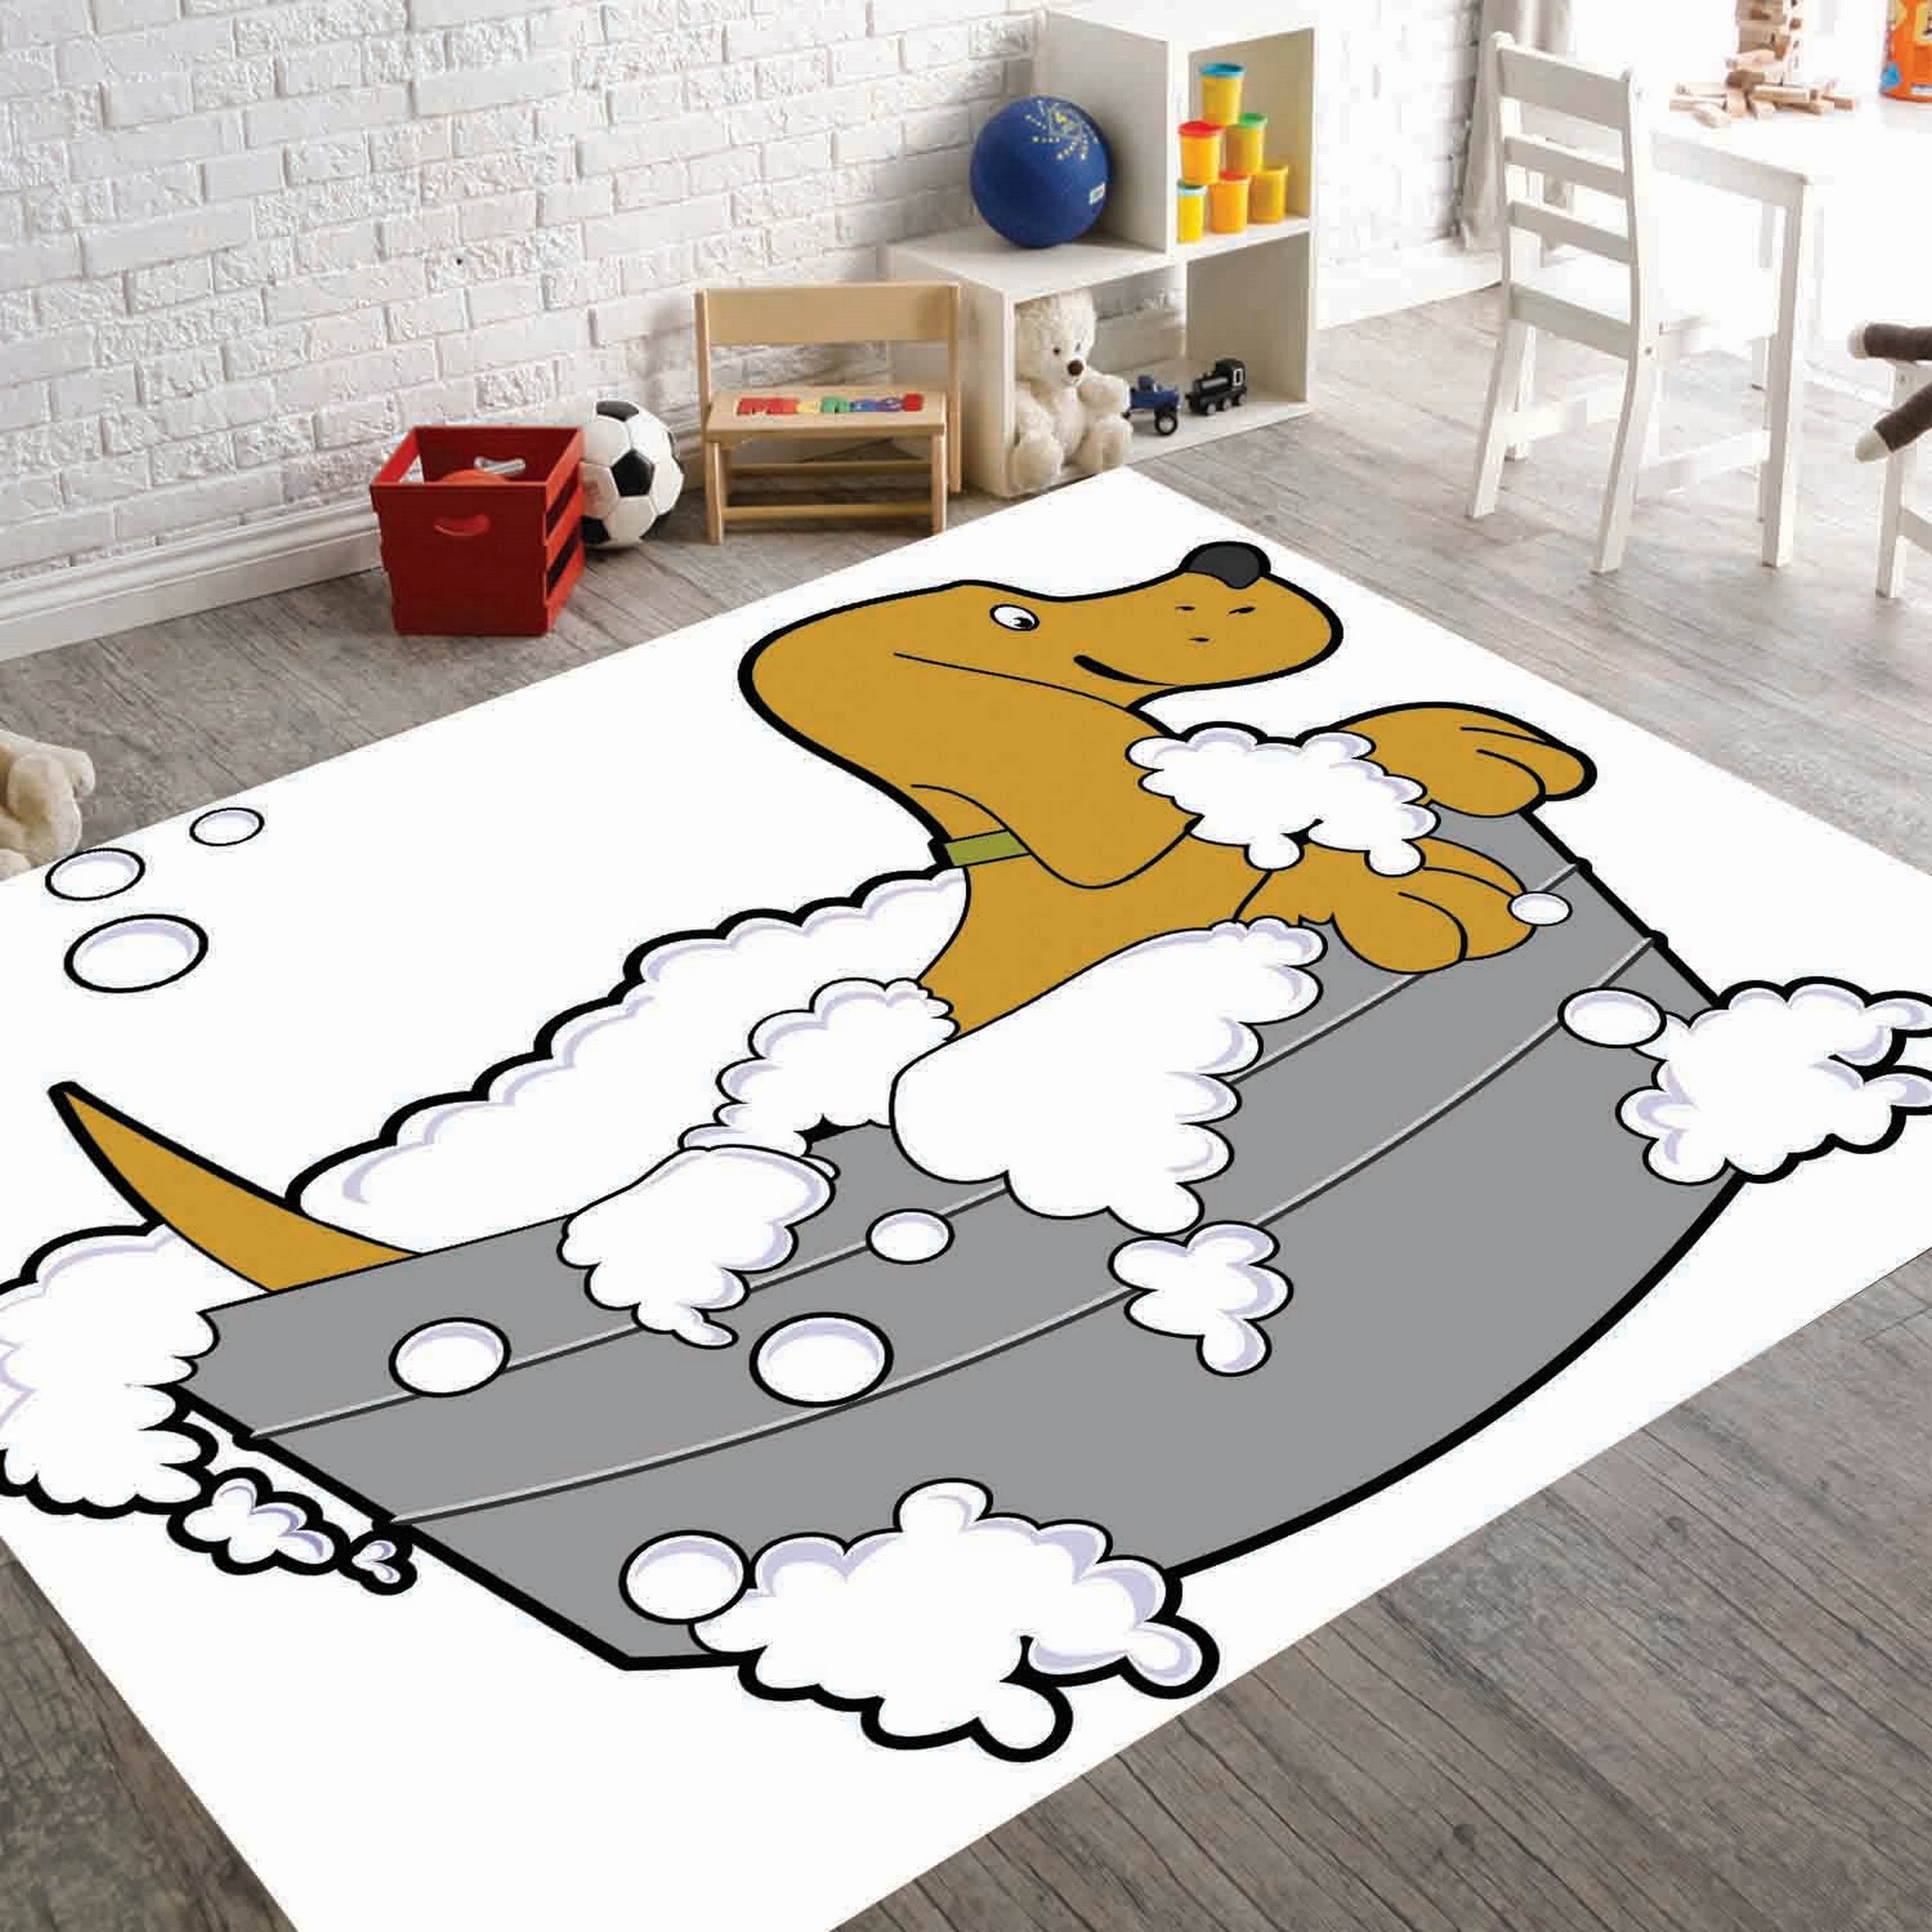 Cartoon Bathroom Water-absorbing Mat, Decorative Festival Doormat